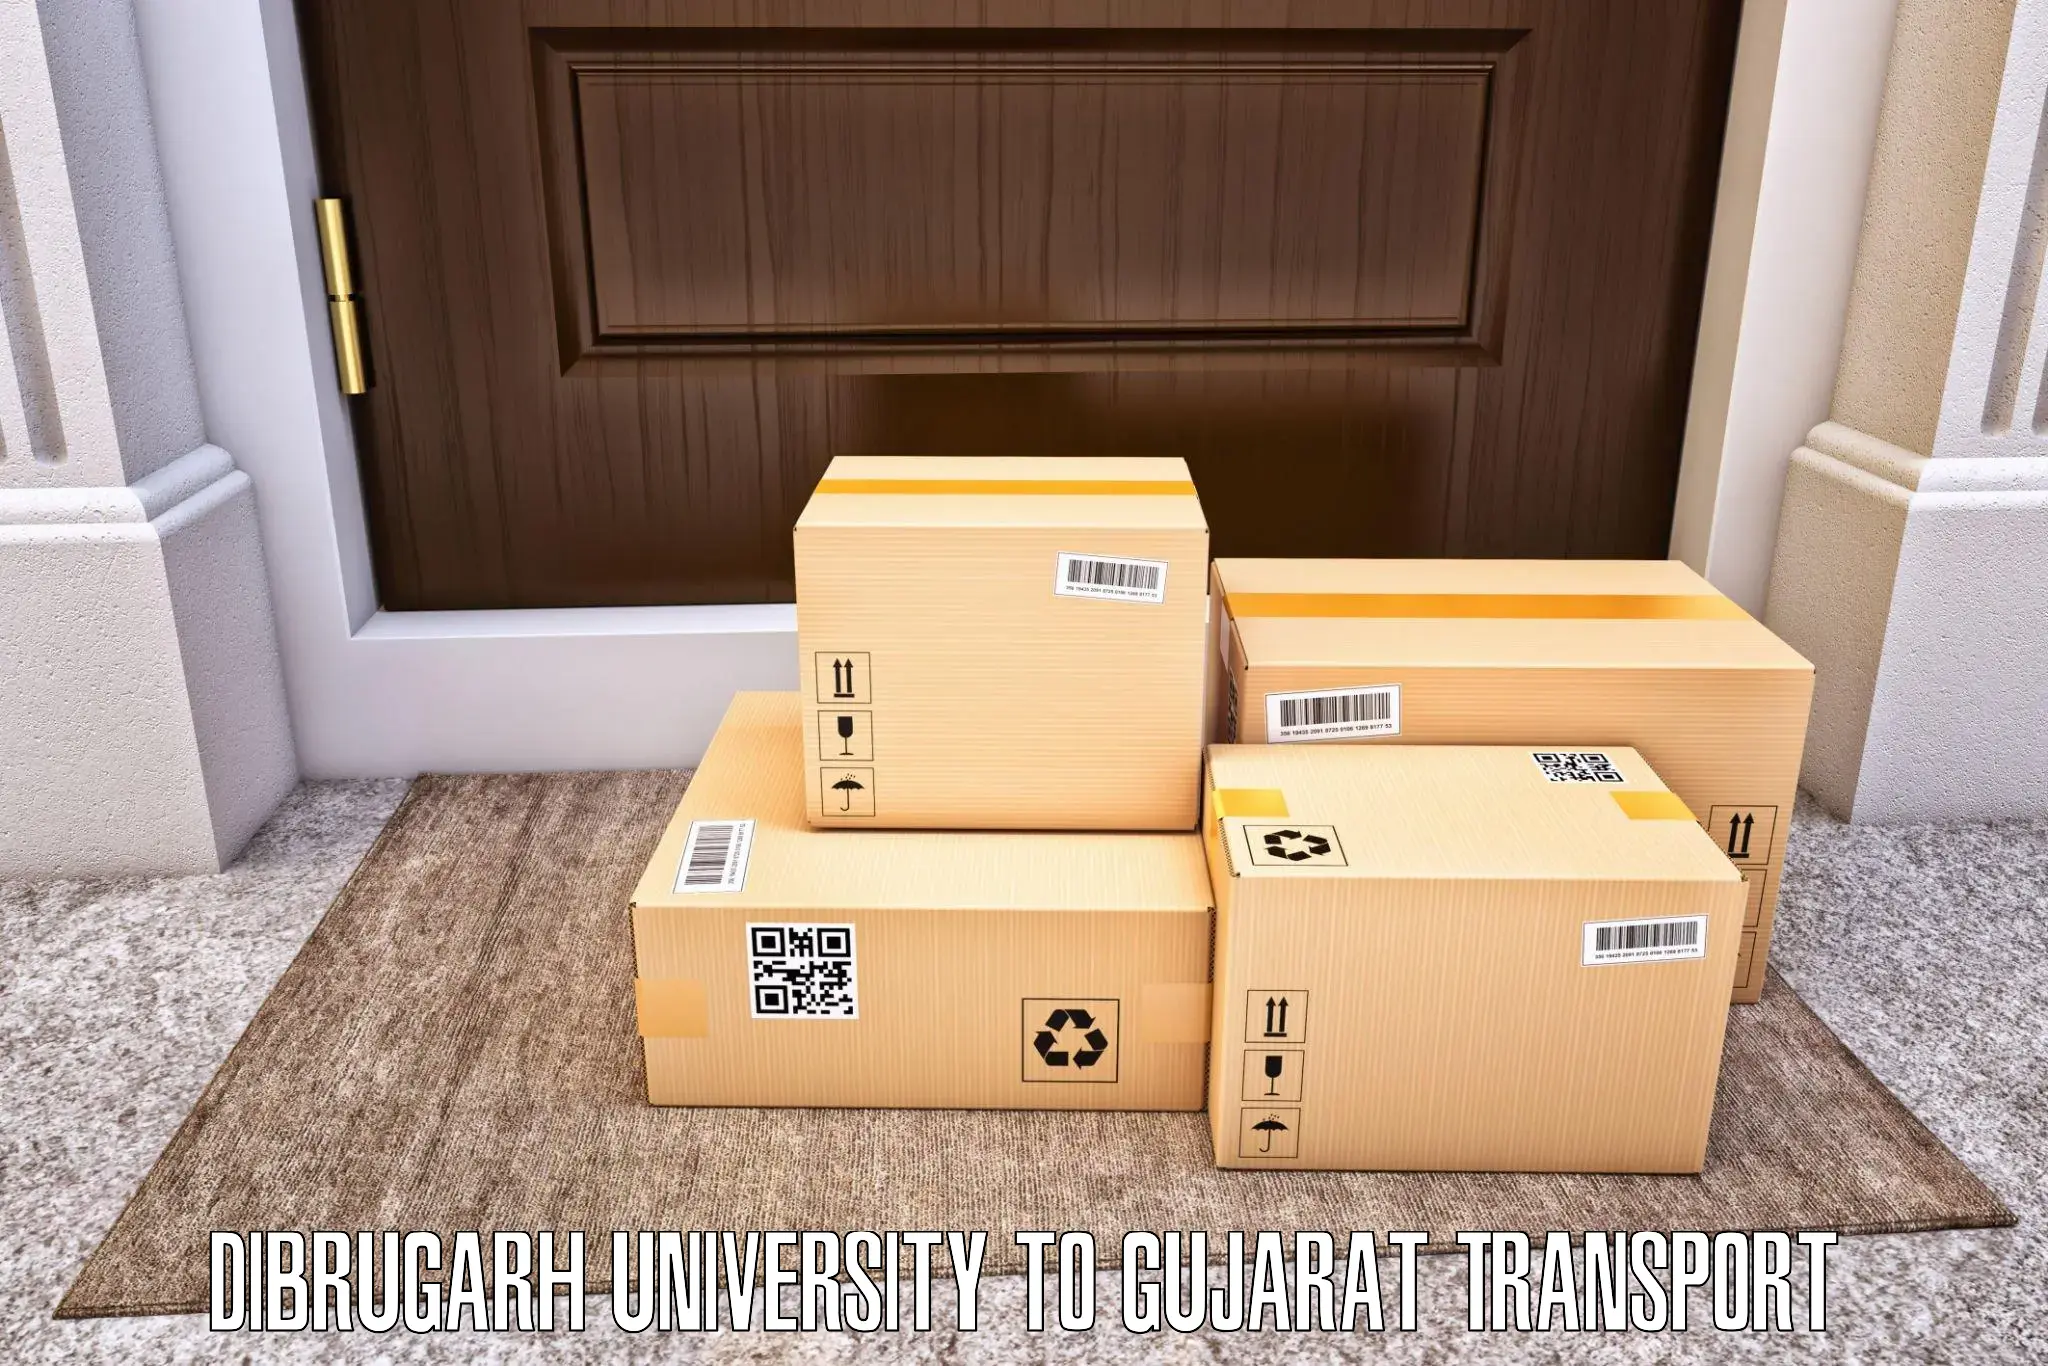 Land transport services Dibrugarh University to Kutiyana